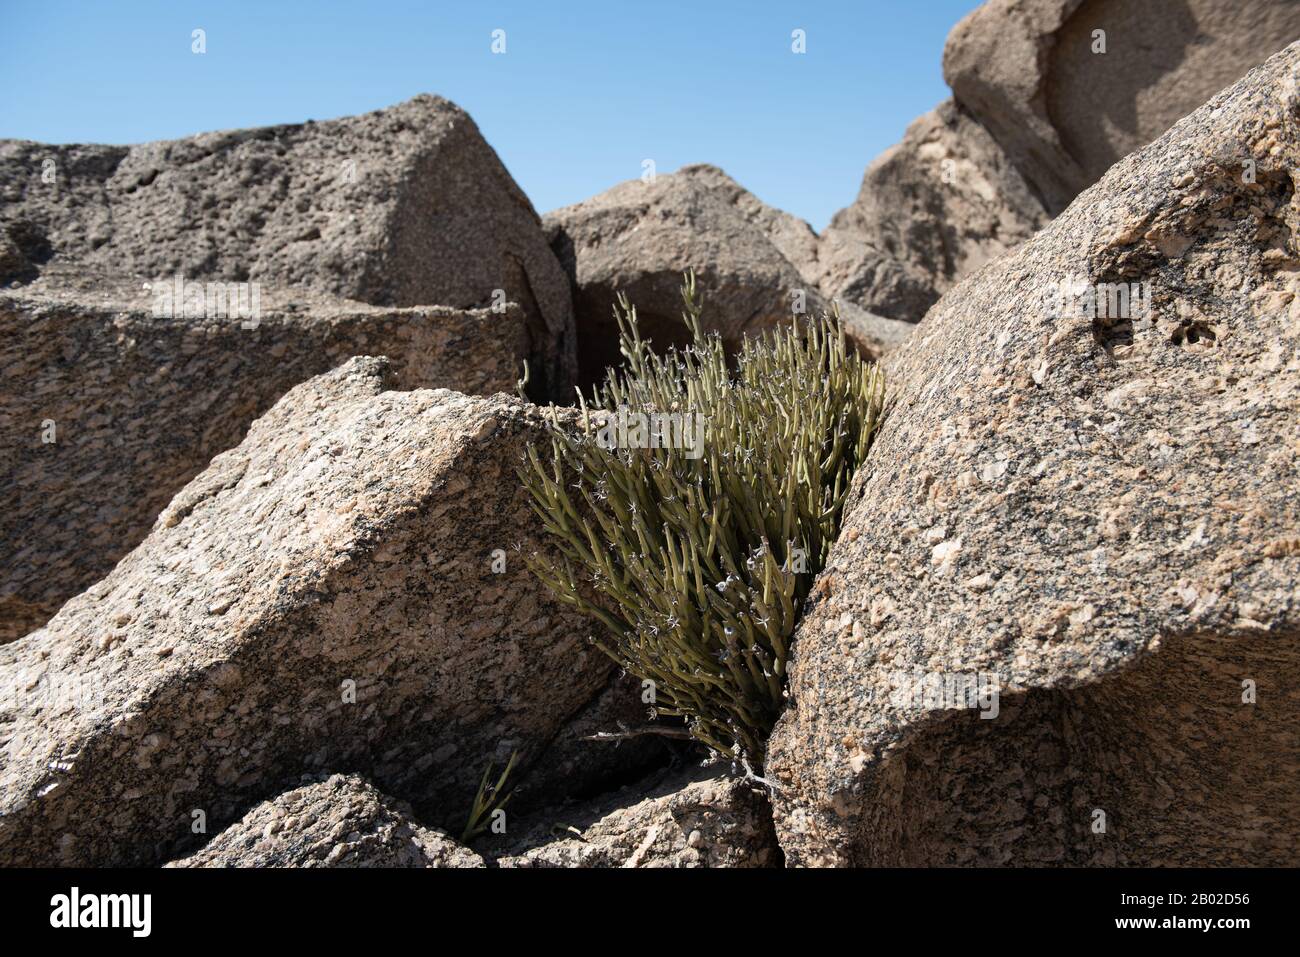 rocks in Namibia Stock Photo